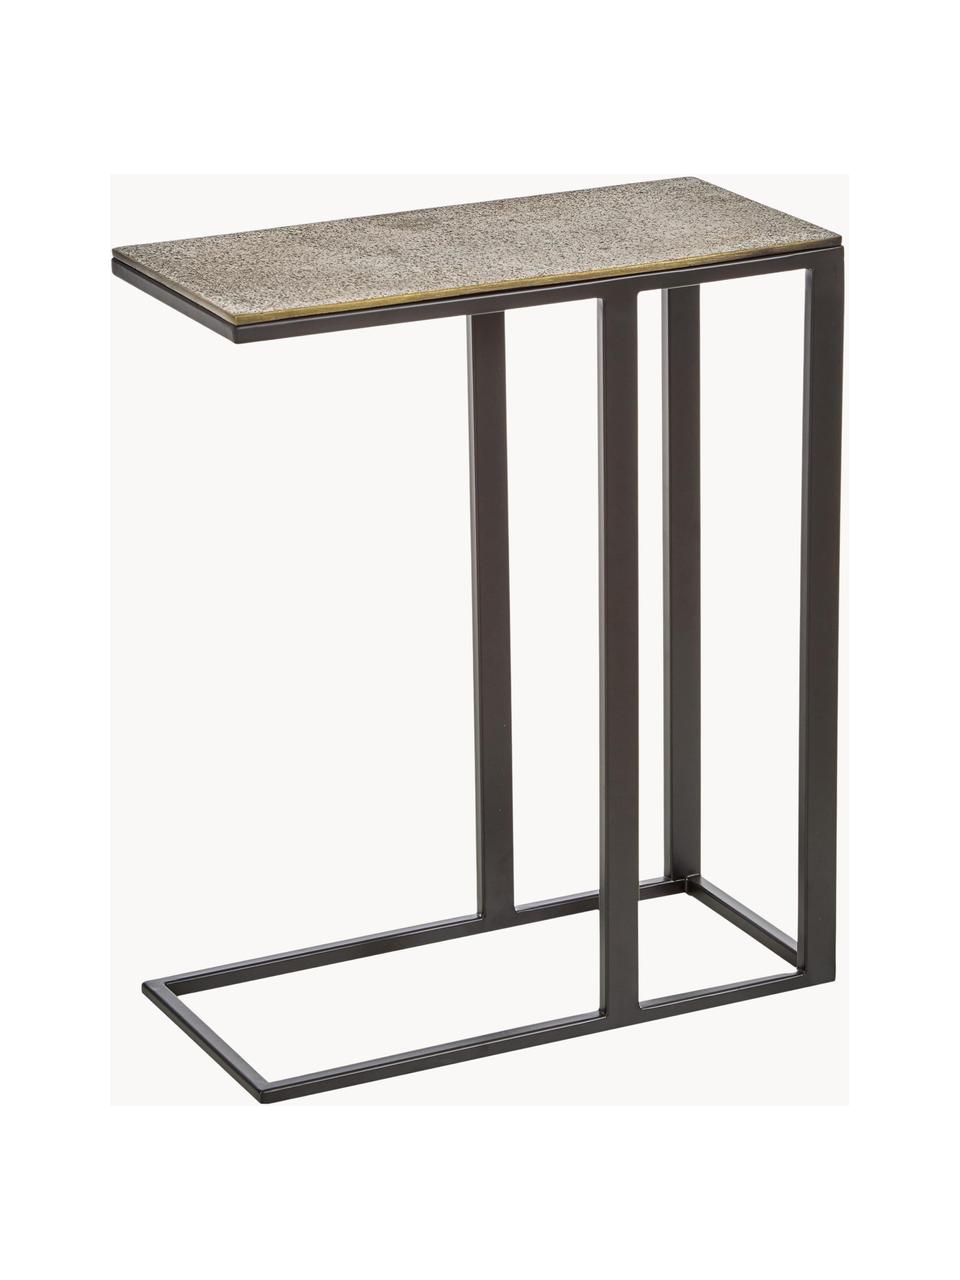 Beistelltisch Edge, Tischplatte: Metall, beschichtet, Gestell: Metall, pulverbeschichtet, Messingfarben, B 45 x H 62 cm